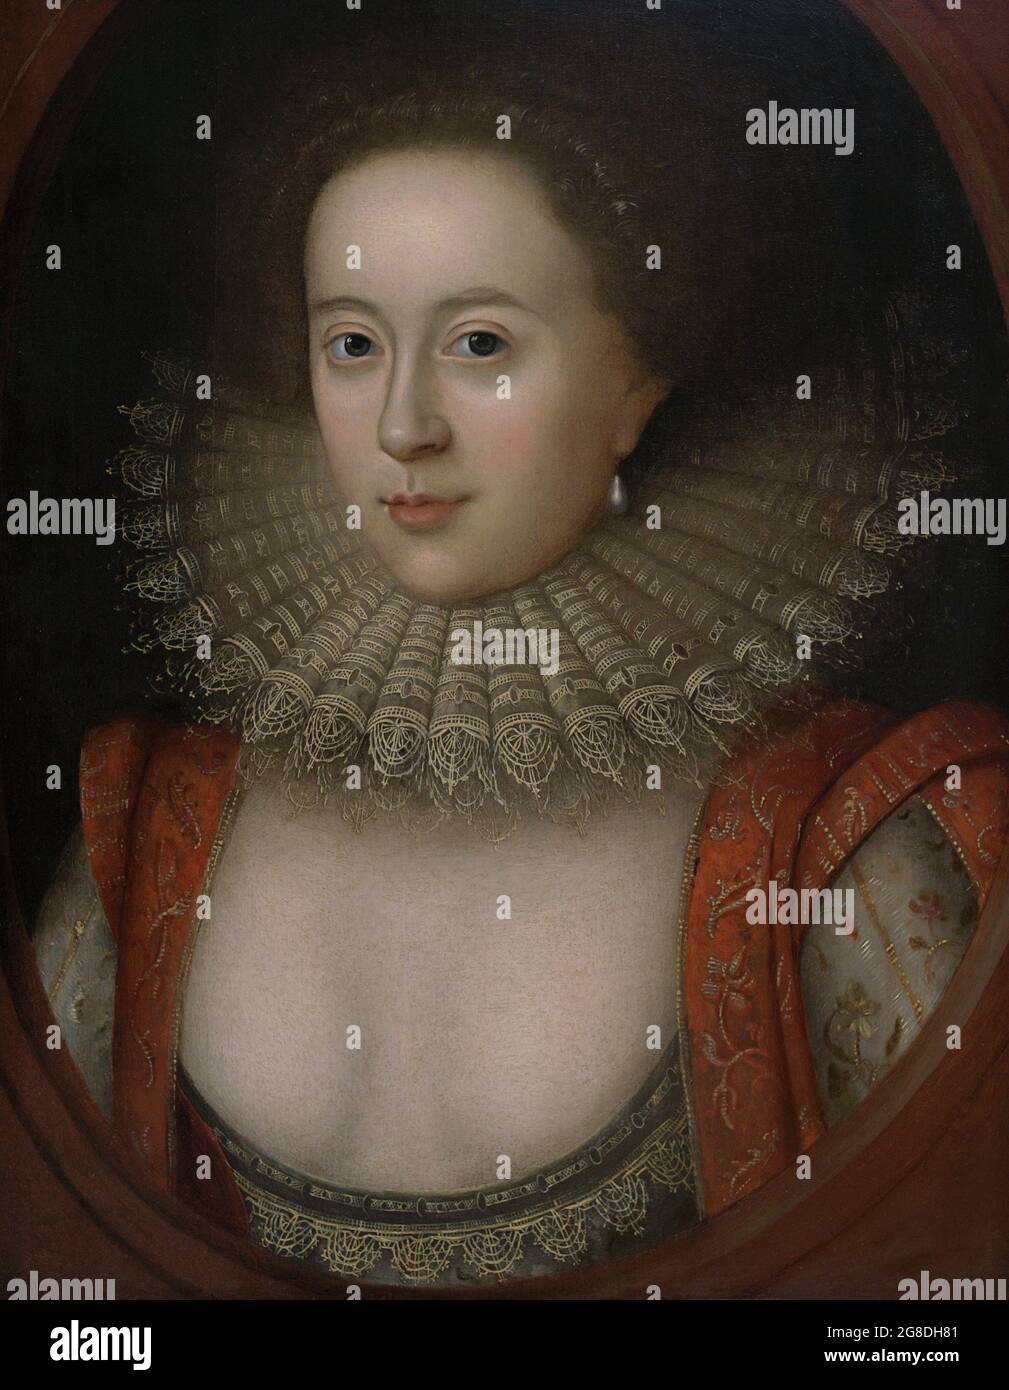 Frances Carr, comtesse de Somerset (1590-1632). Noble anglais. Portrait. Studio de Willliam Larkin (vers 1580-1619). Huile sur panneau (57,5 x 43,8 cm), env. 1615. Musée national du portrait. Londres, Angleterre, Royaume-Uni. Banque D'Images